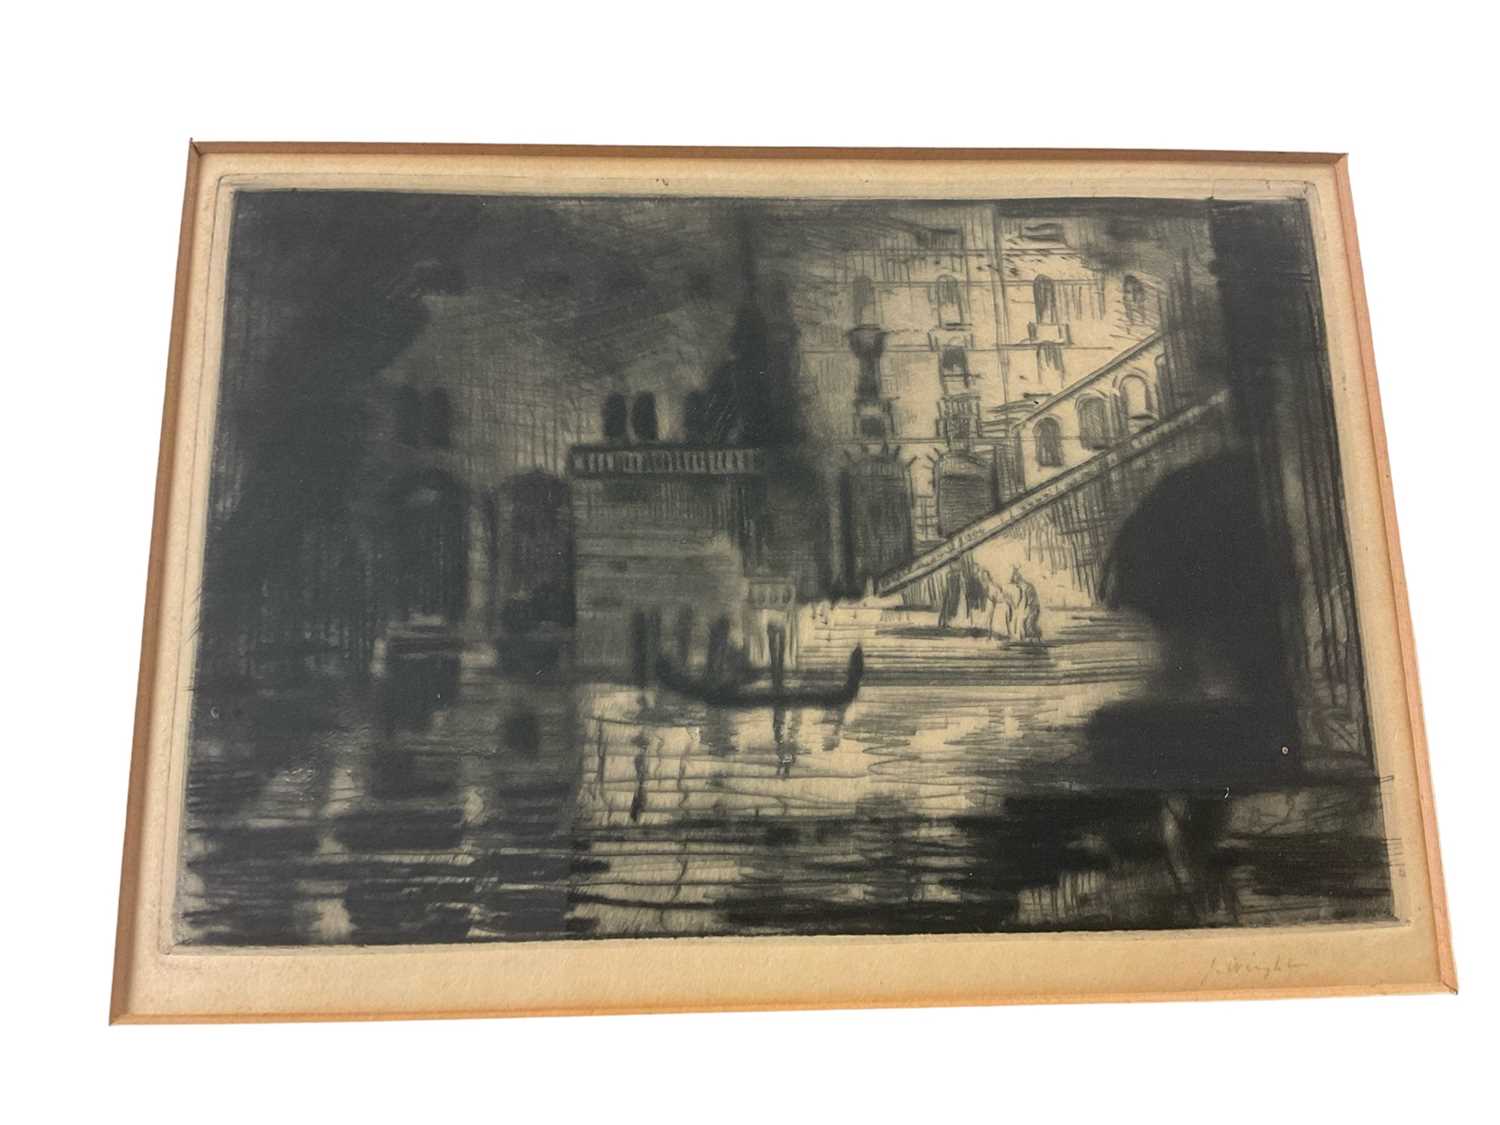 Lot 95 - Manner of Whistler, etching Venetian scene